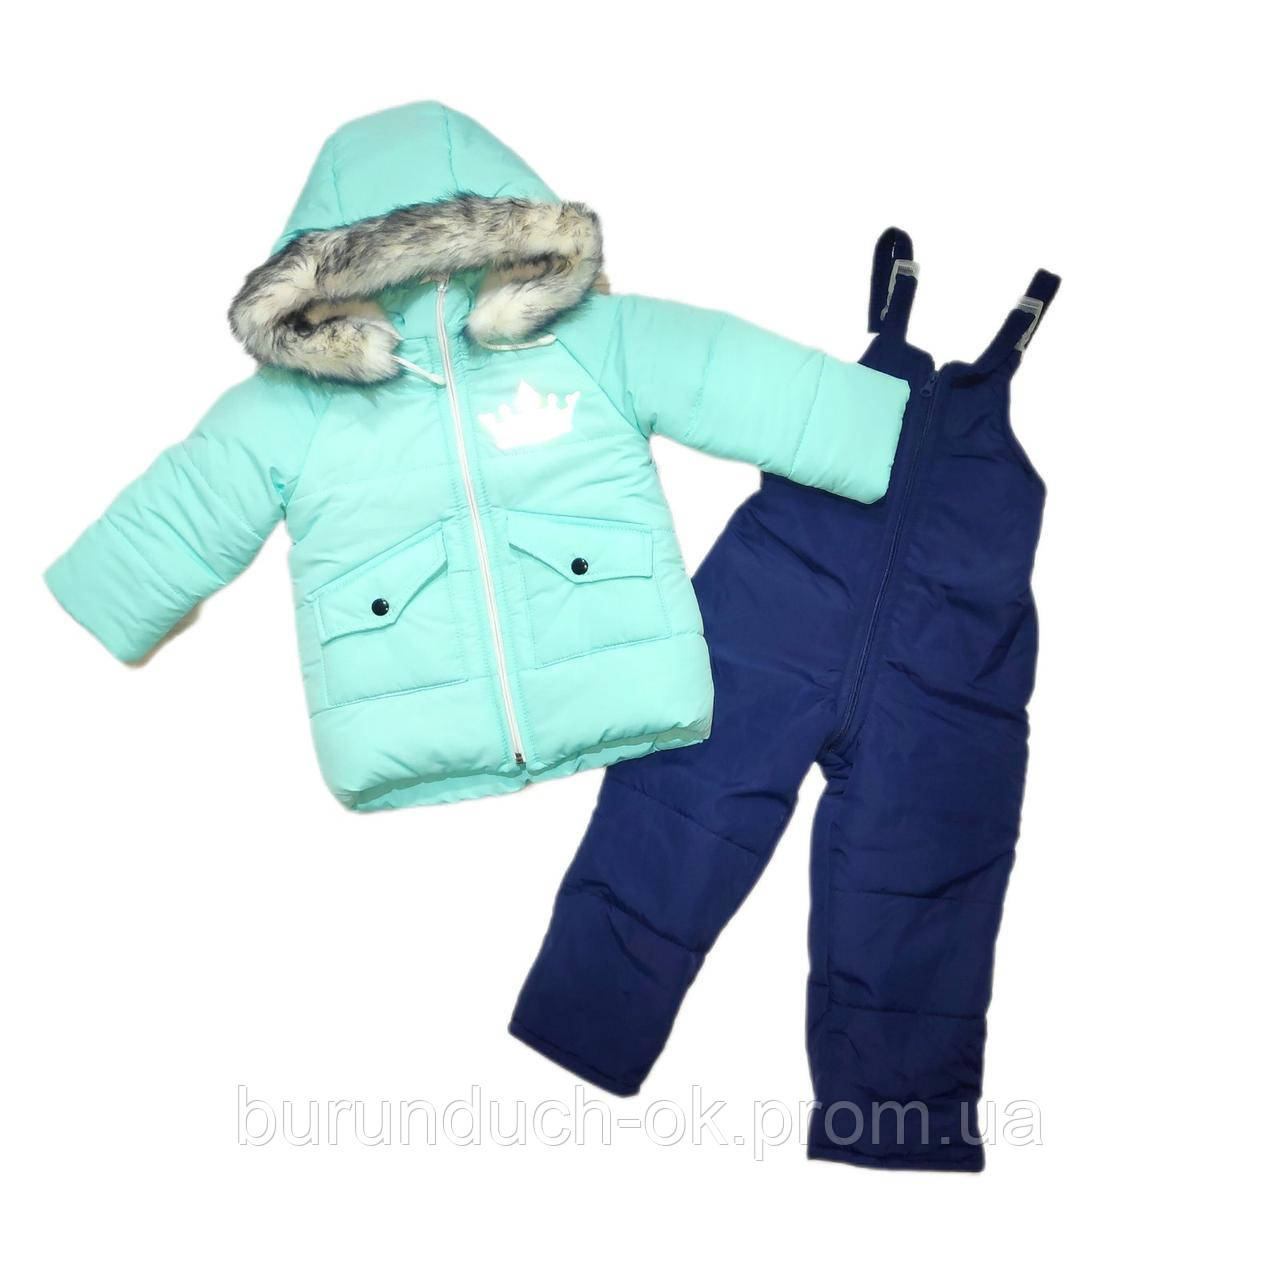 Куртка та комбінезон розмір 92 від 1,5 до 2,5 років Зима Бірюзовий/темно-синій